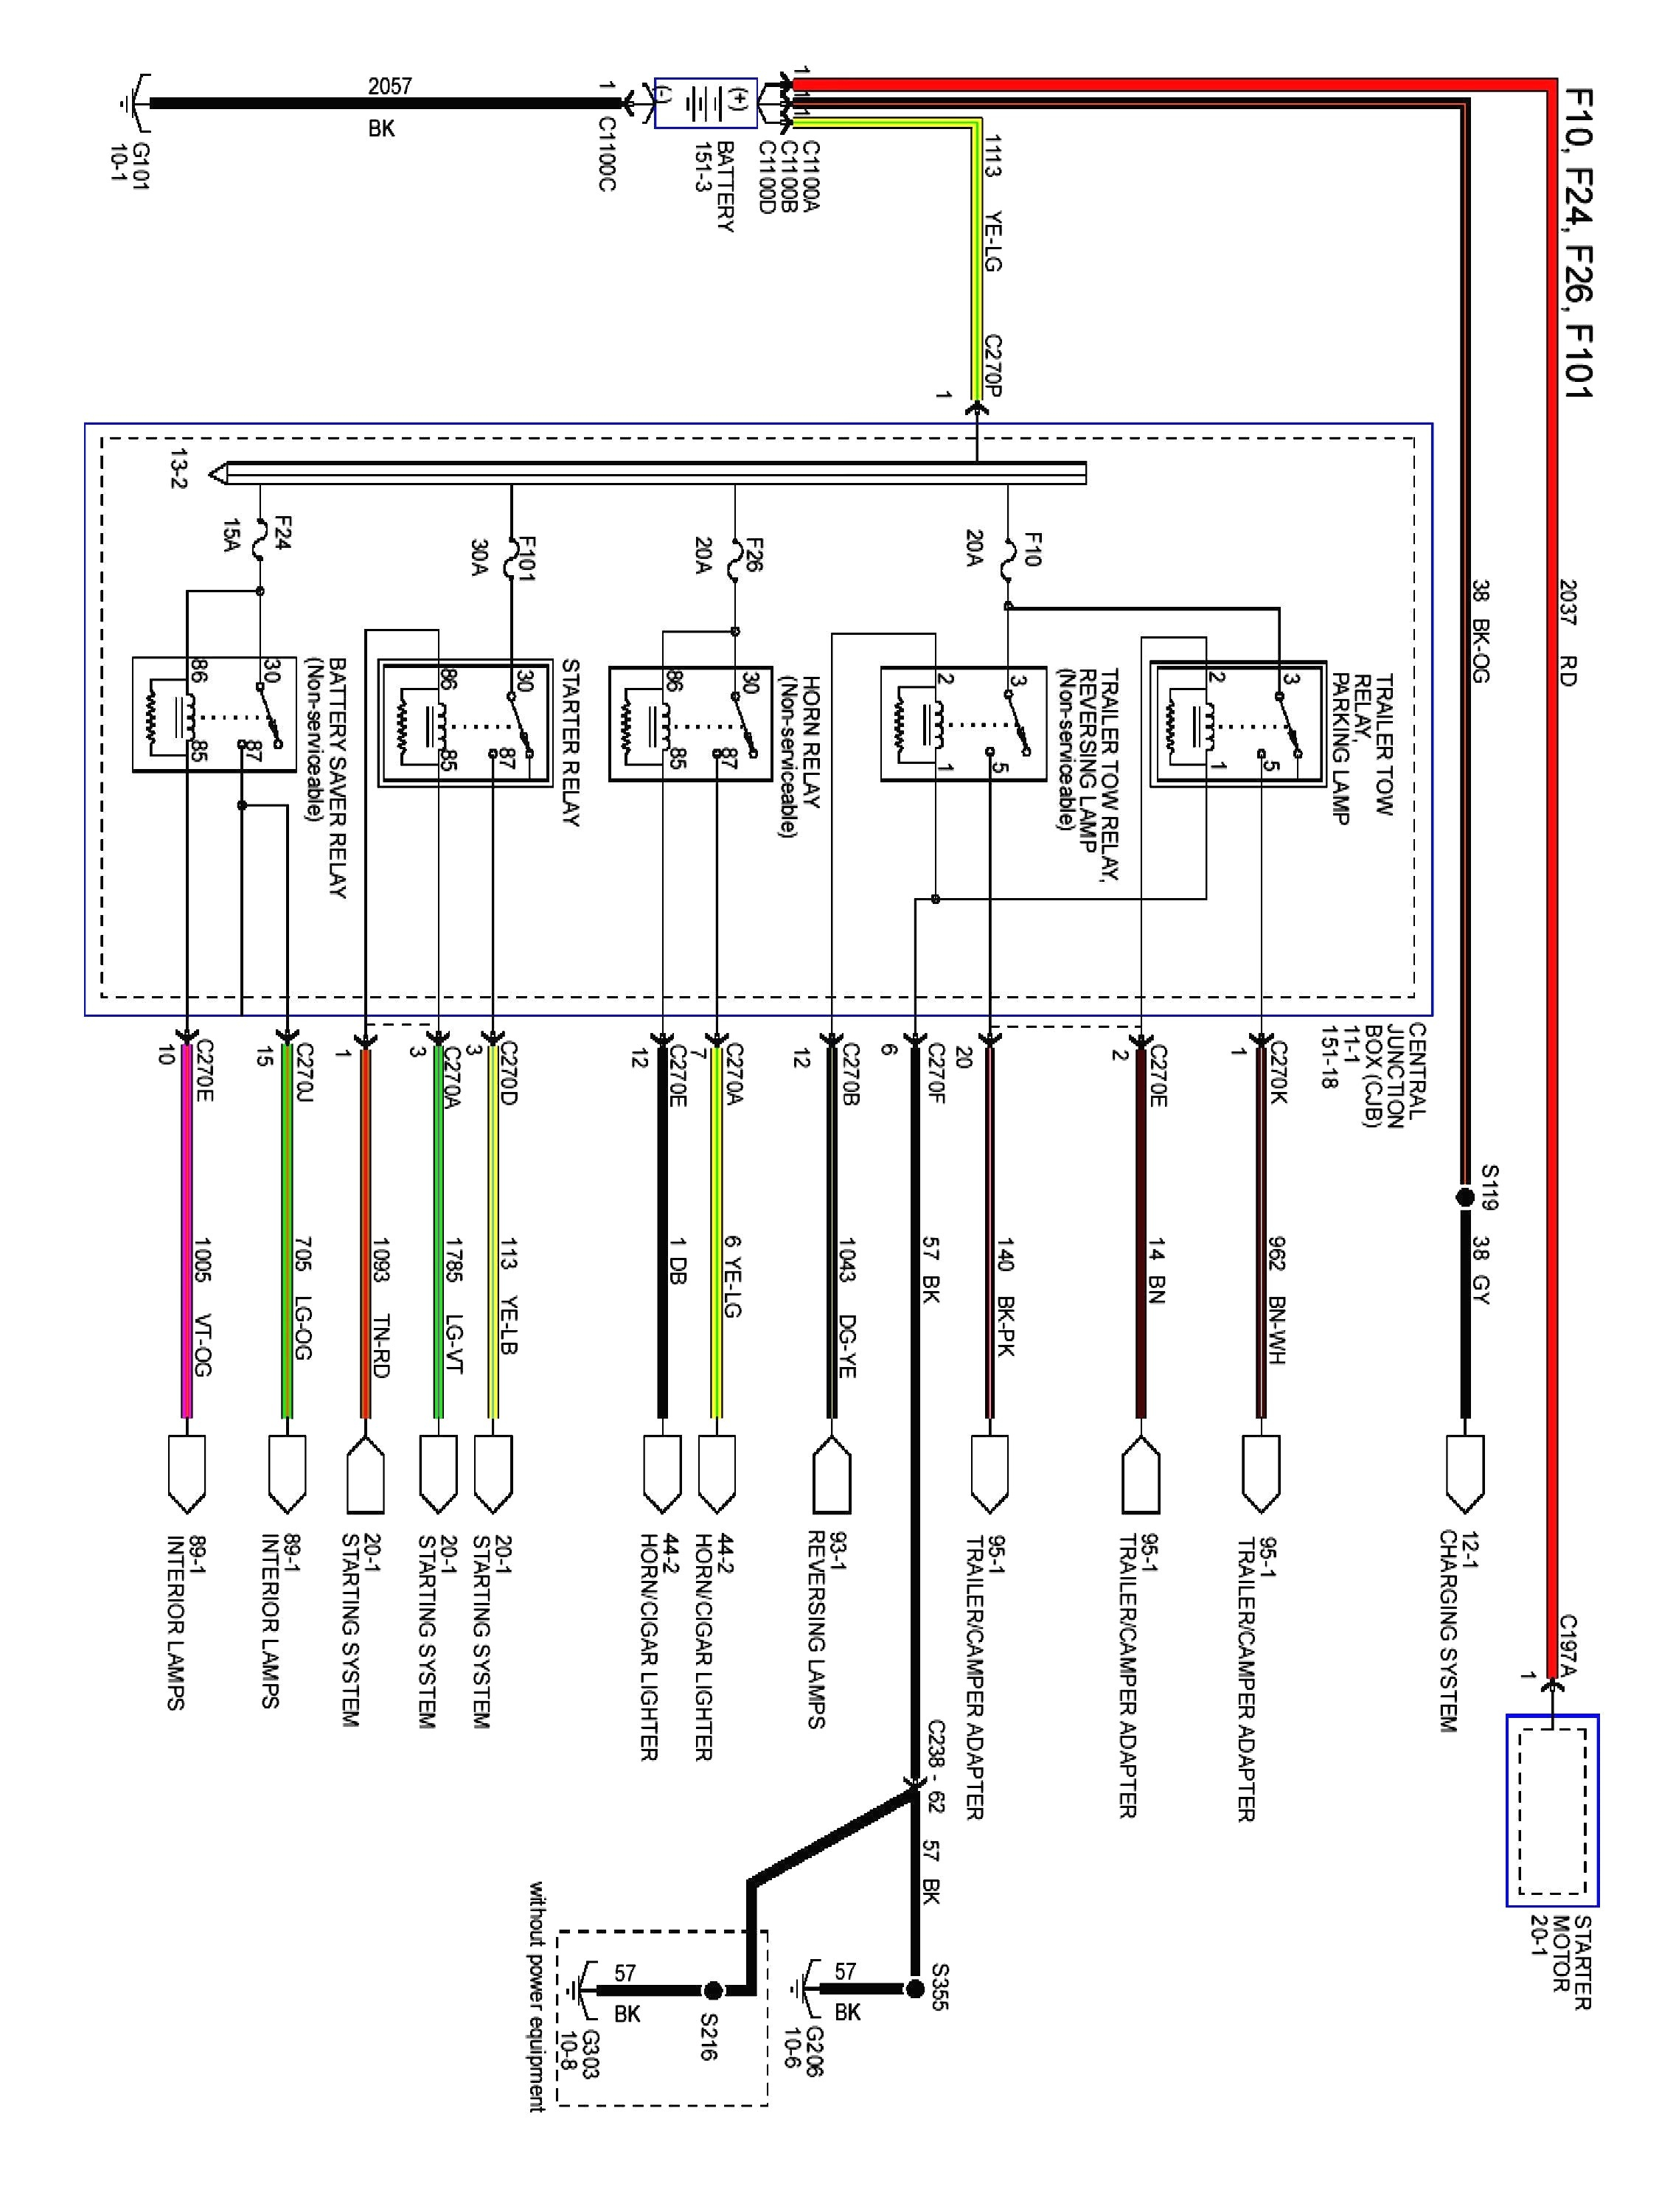 fan hunter diagram wiring 23780 42 wiring diagram name fan hunter diagram wiring 23780 42